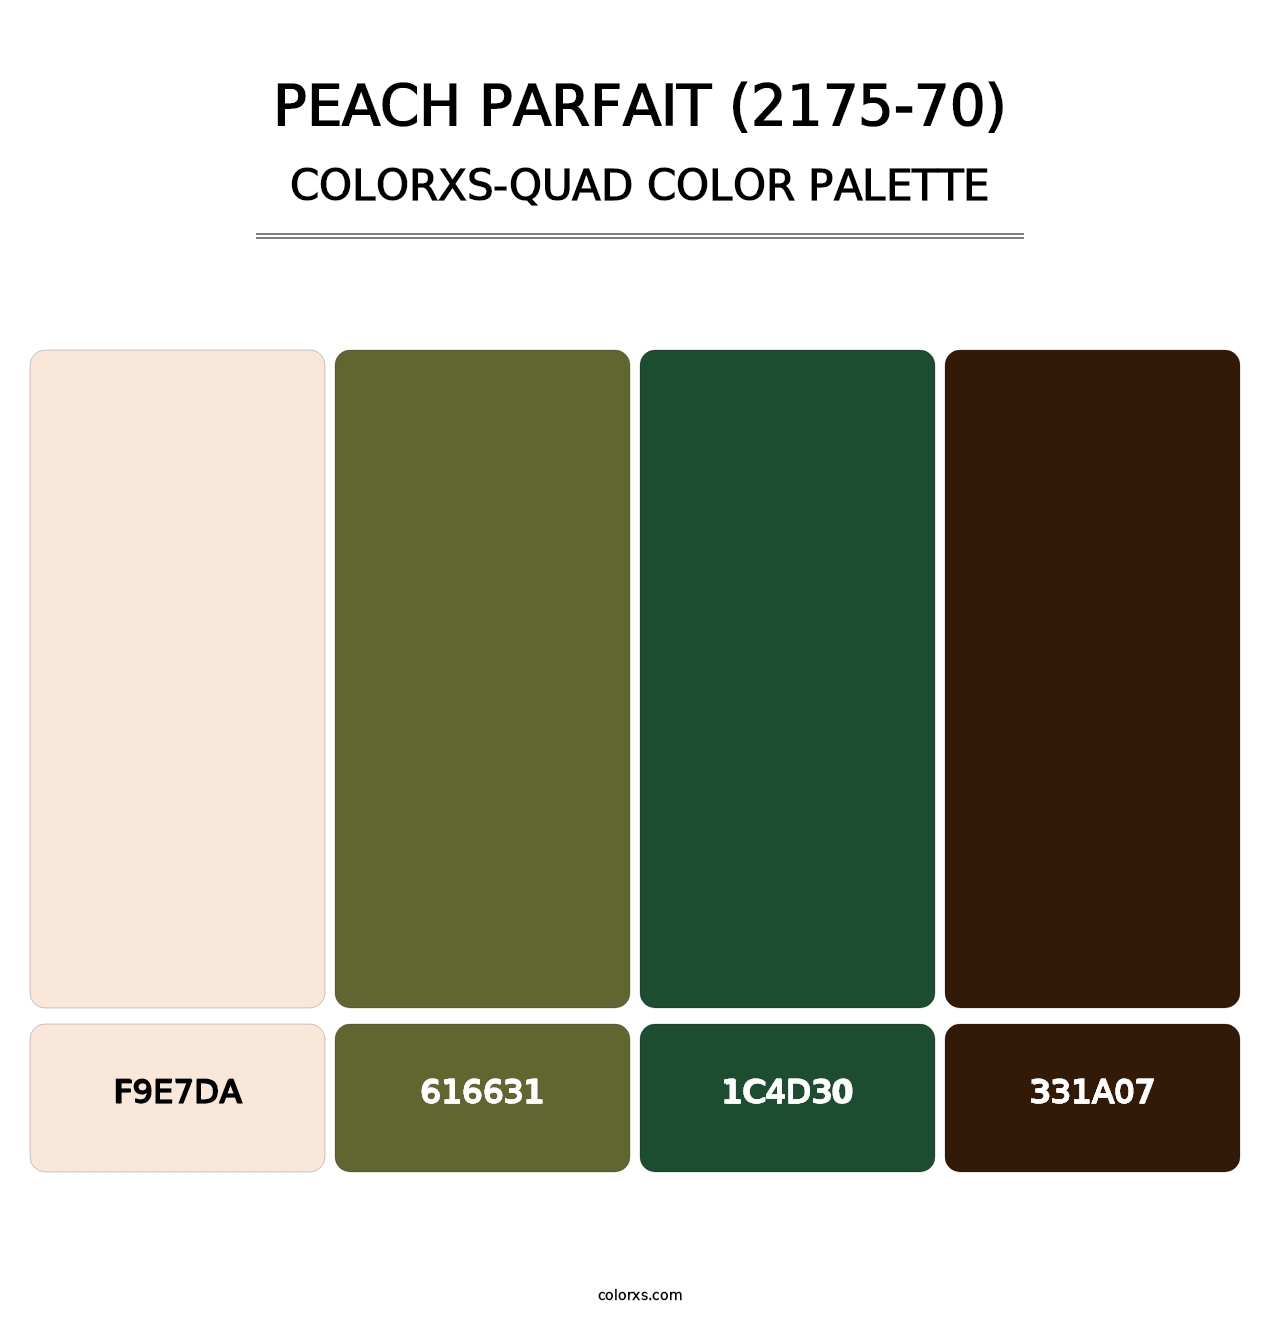 Peach Parfait (2175-70) - Colorxs Quad Palette